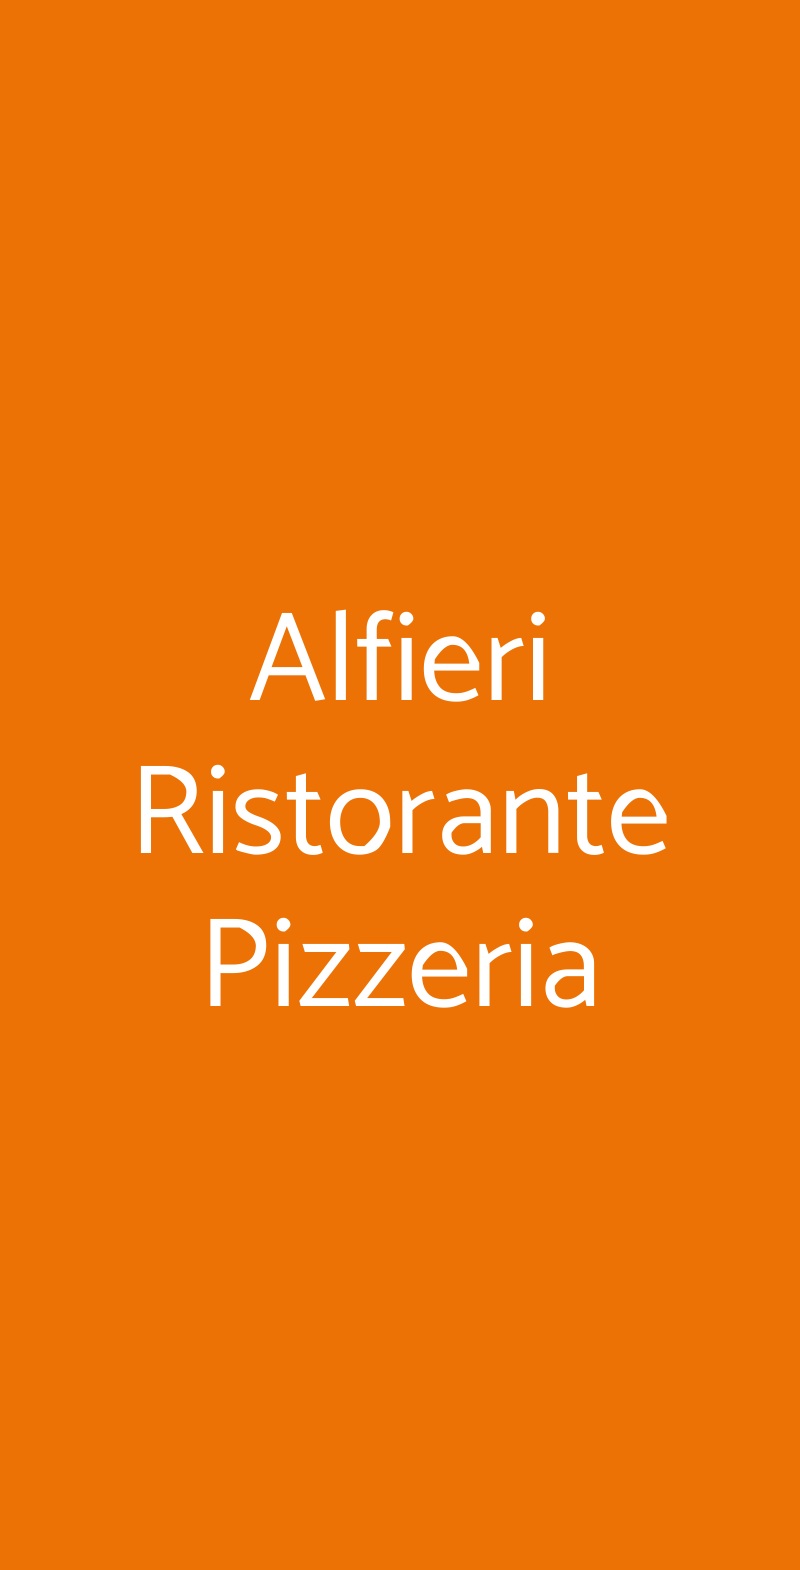 Alfieri Ristorante Pizzeria Magliano Alfieri menù 1 pagina